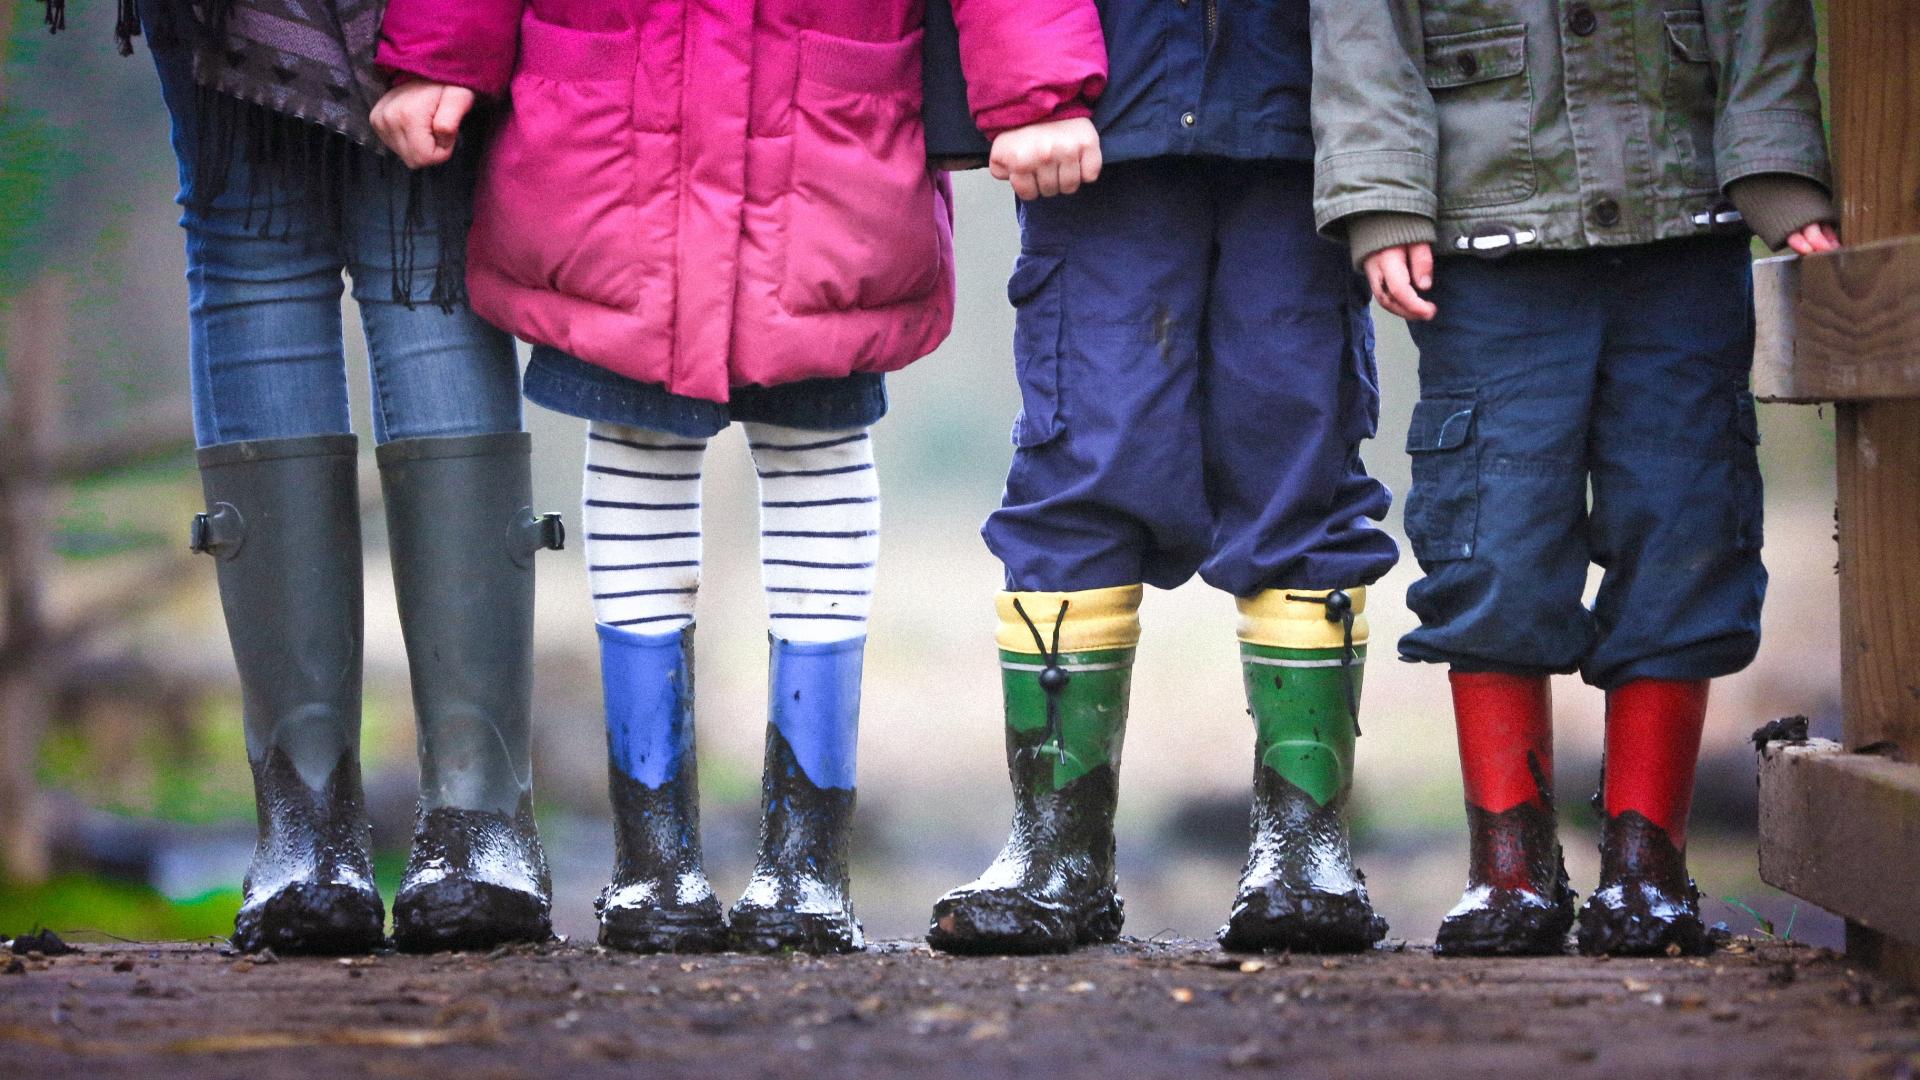 Four children in muddy wellies